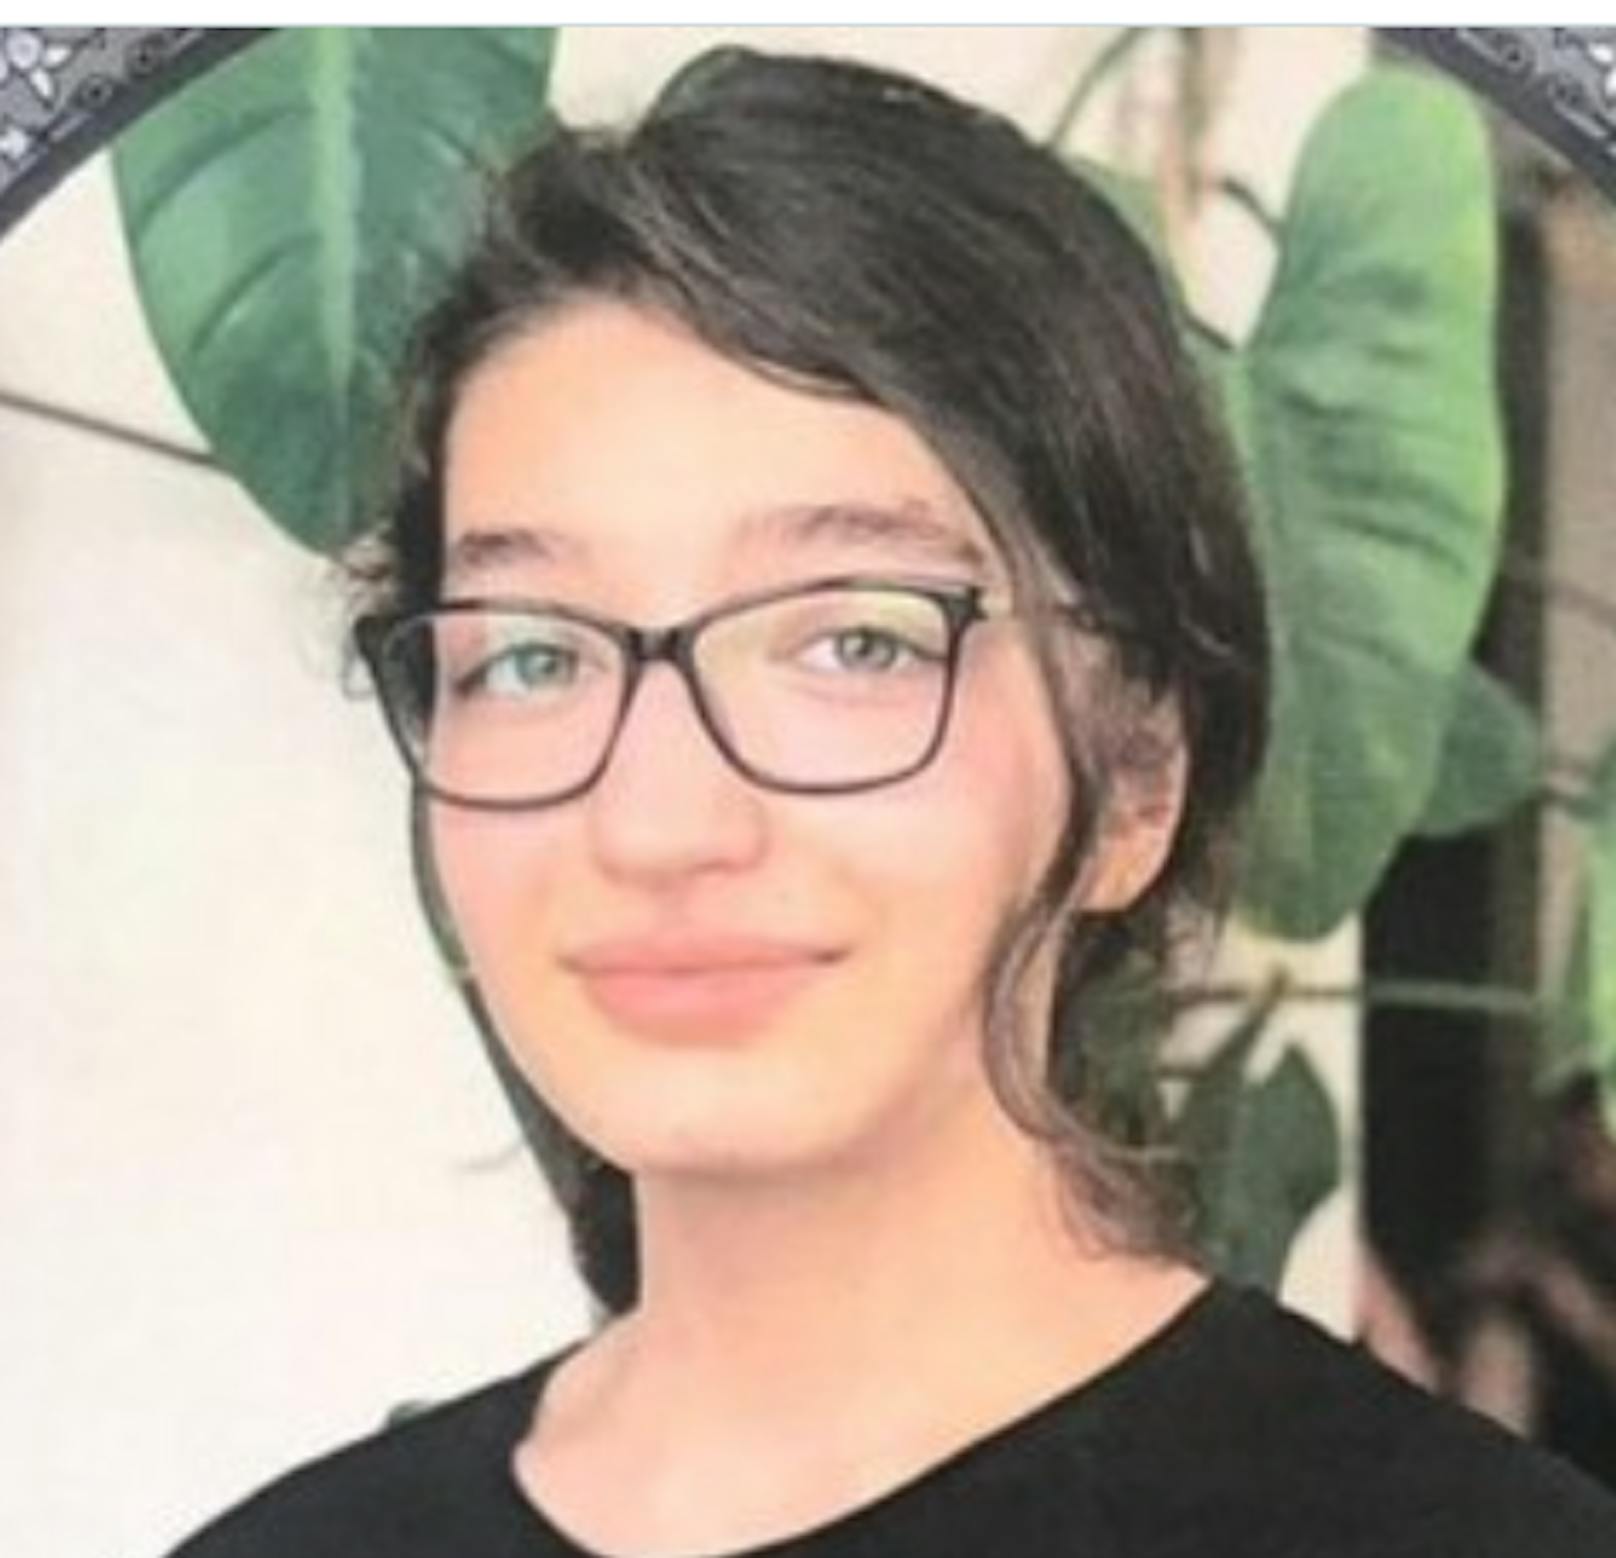 Die 16-jährige Sarina Esmailzadeh starb am Samstag. Die Behörden behaupten, sie sei von einem Hochhaus gesprungen und habe so Suizid begangen.